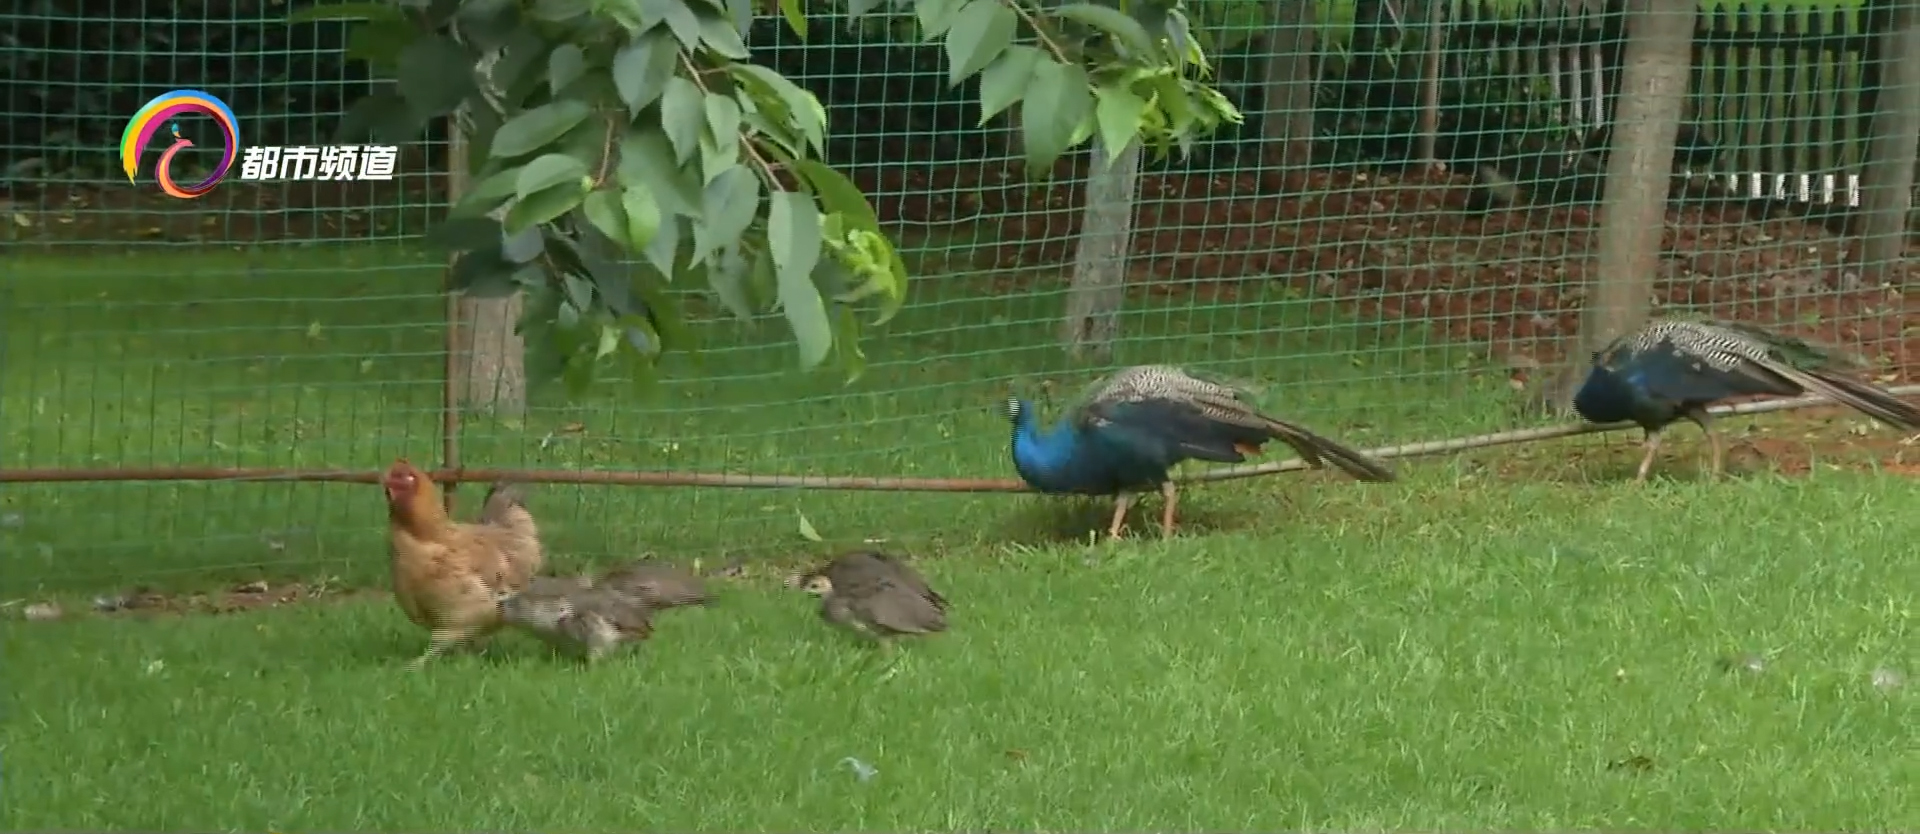 2只老母鸡孵出8只蓝孔雀:小孔雀长大后仍跟鸡妈妈同吃